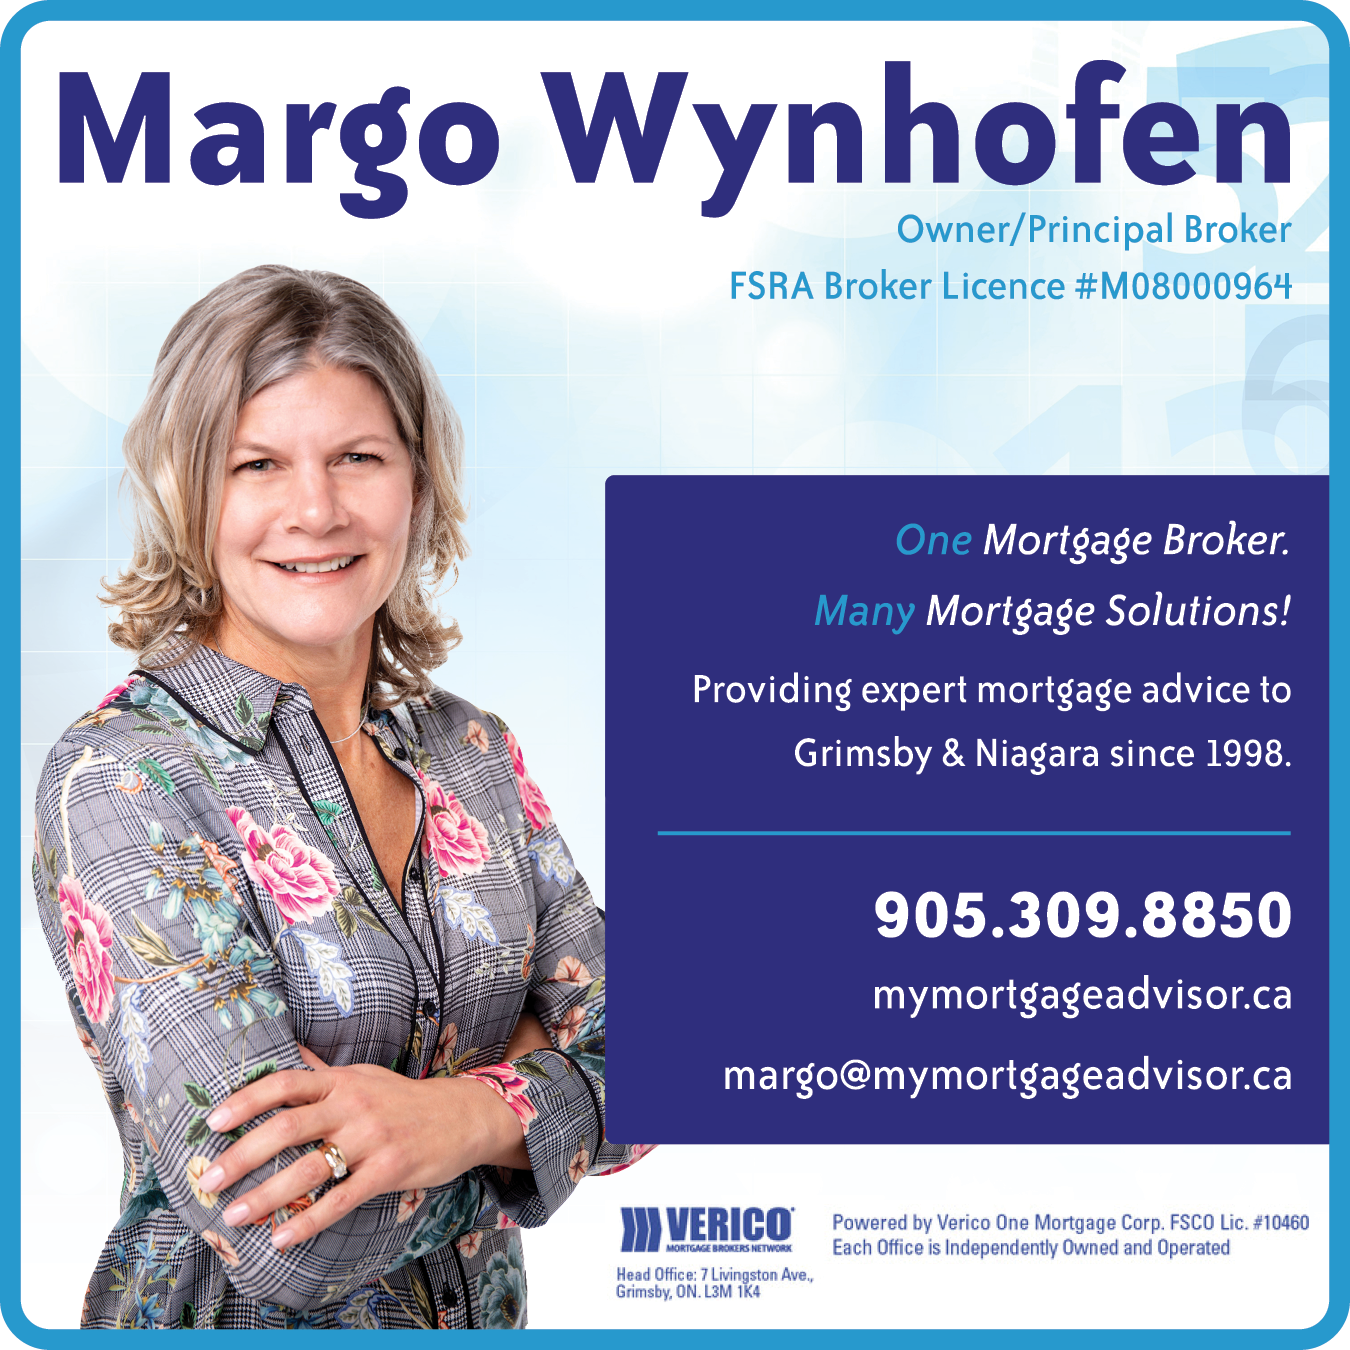 Verico One Mortgage Corp. - Margo Wynhofen